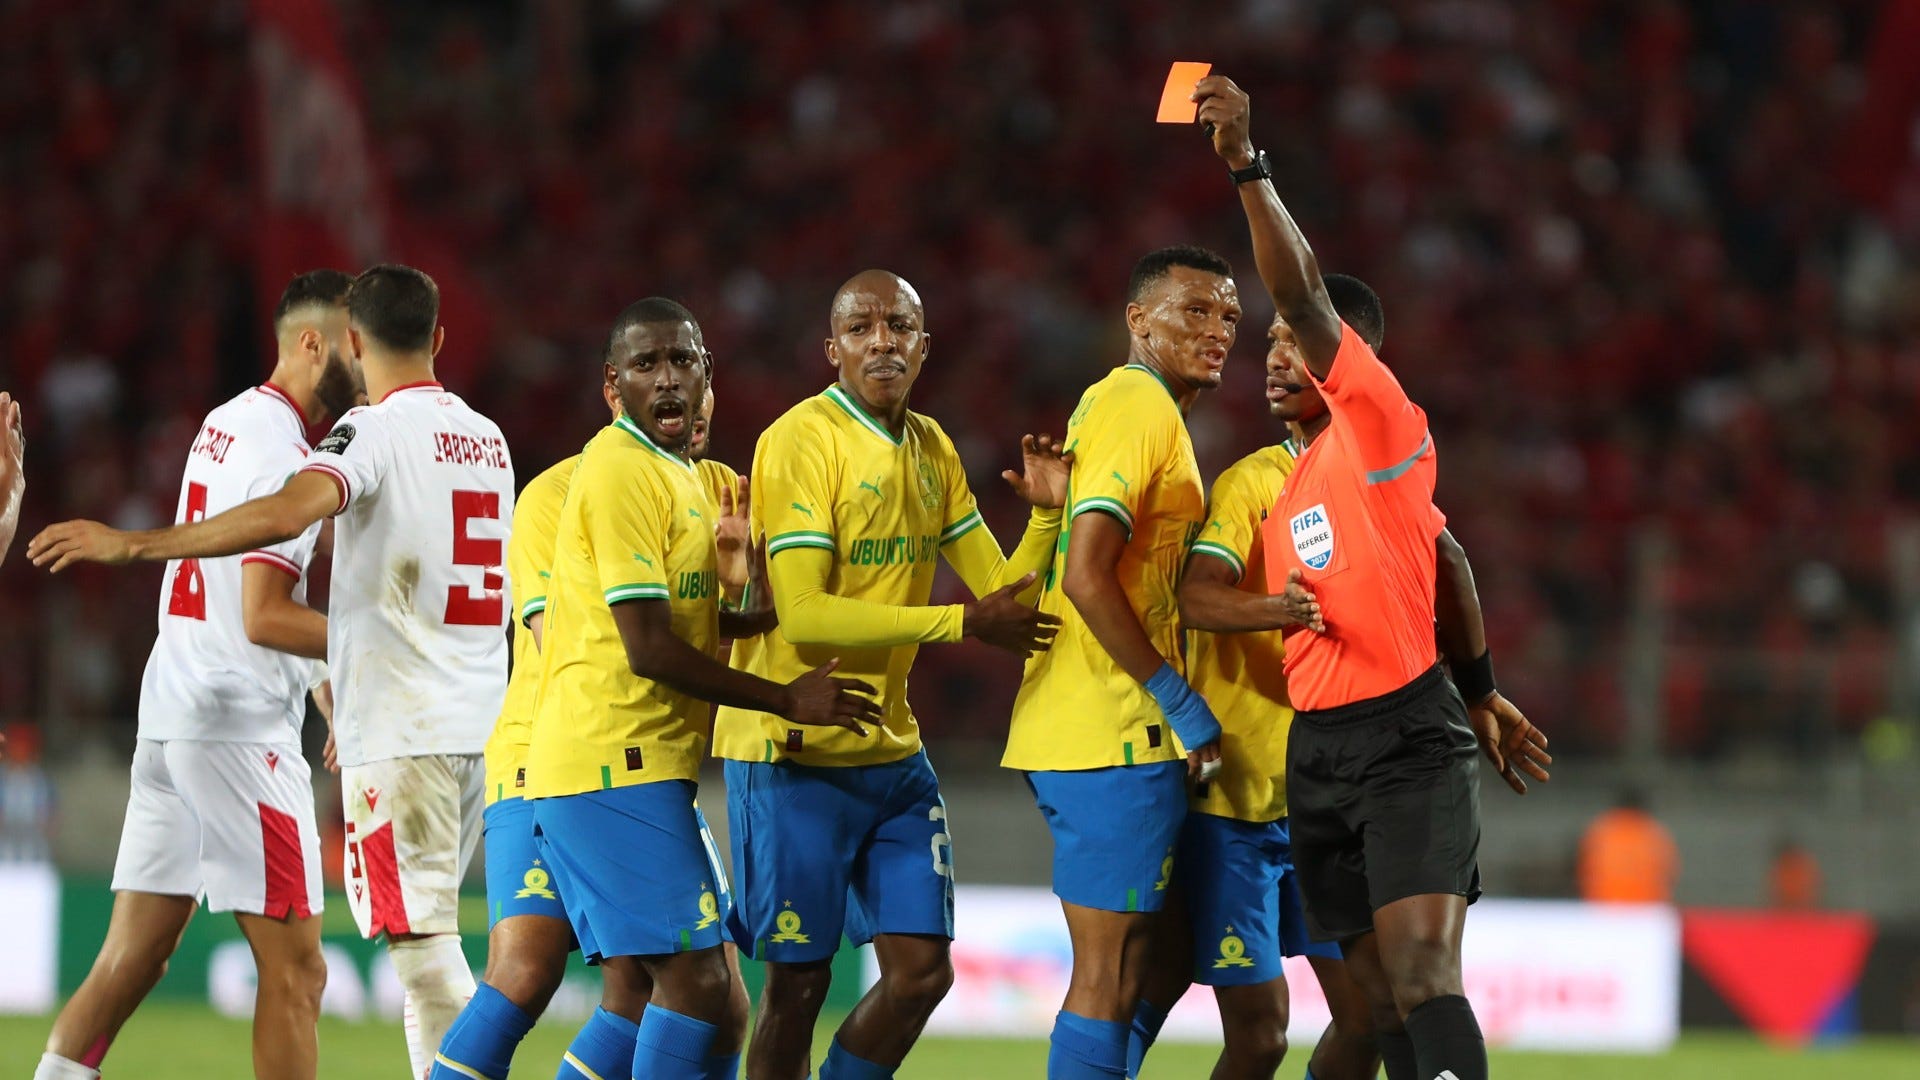 Nine-man Mamelodi Sundowns frustrate Wydad Casablanca in dramatic Caf Champions League clash